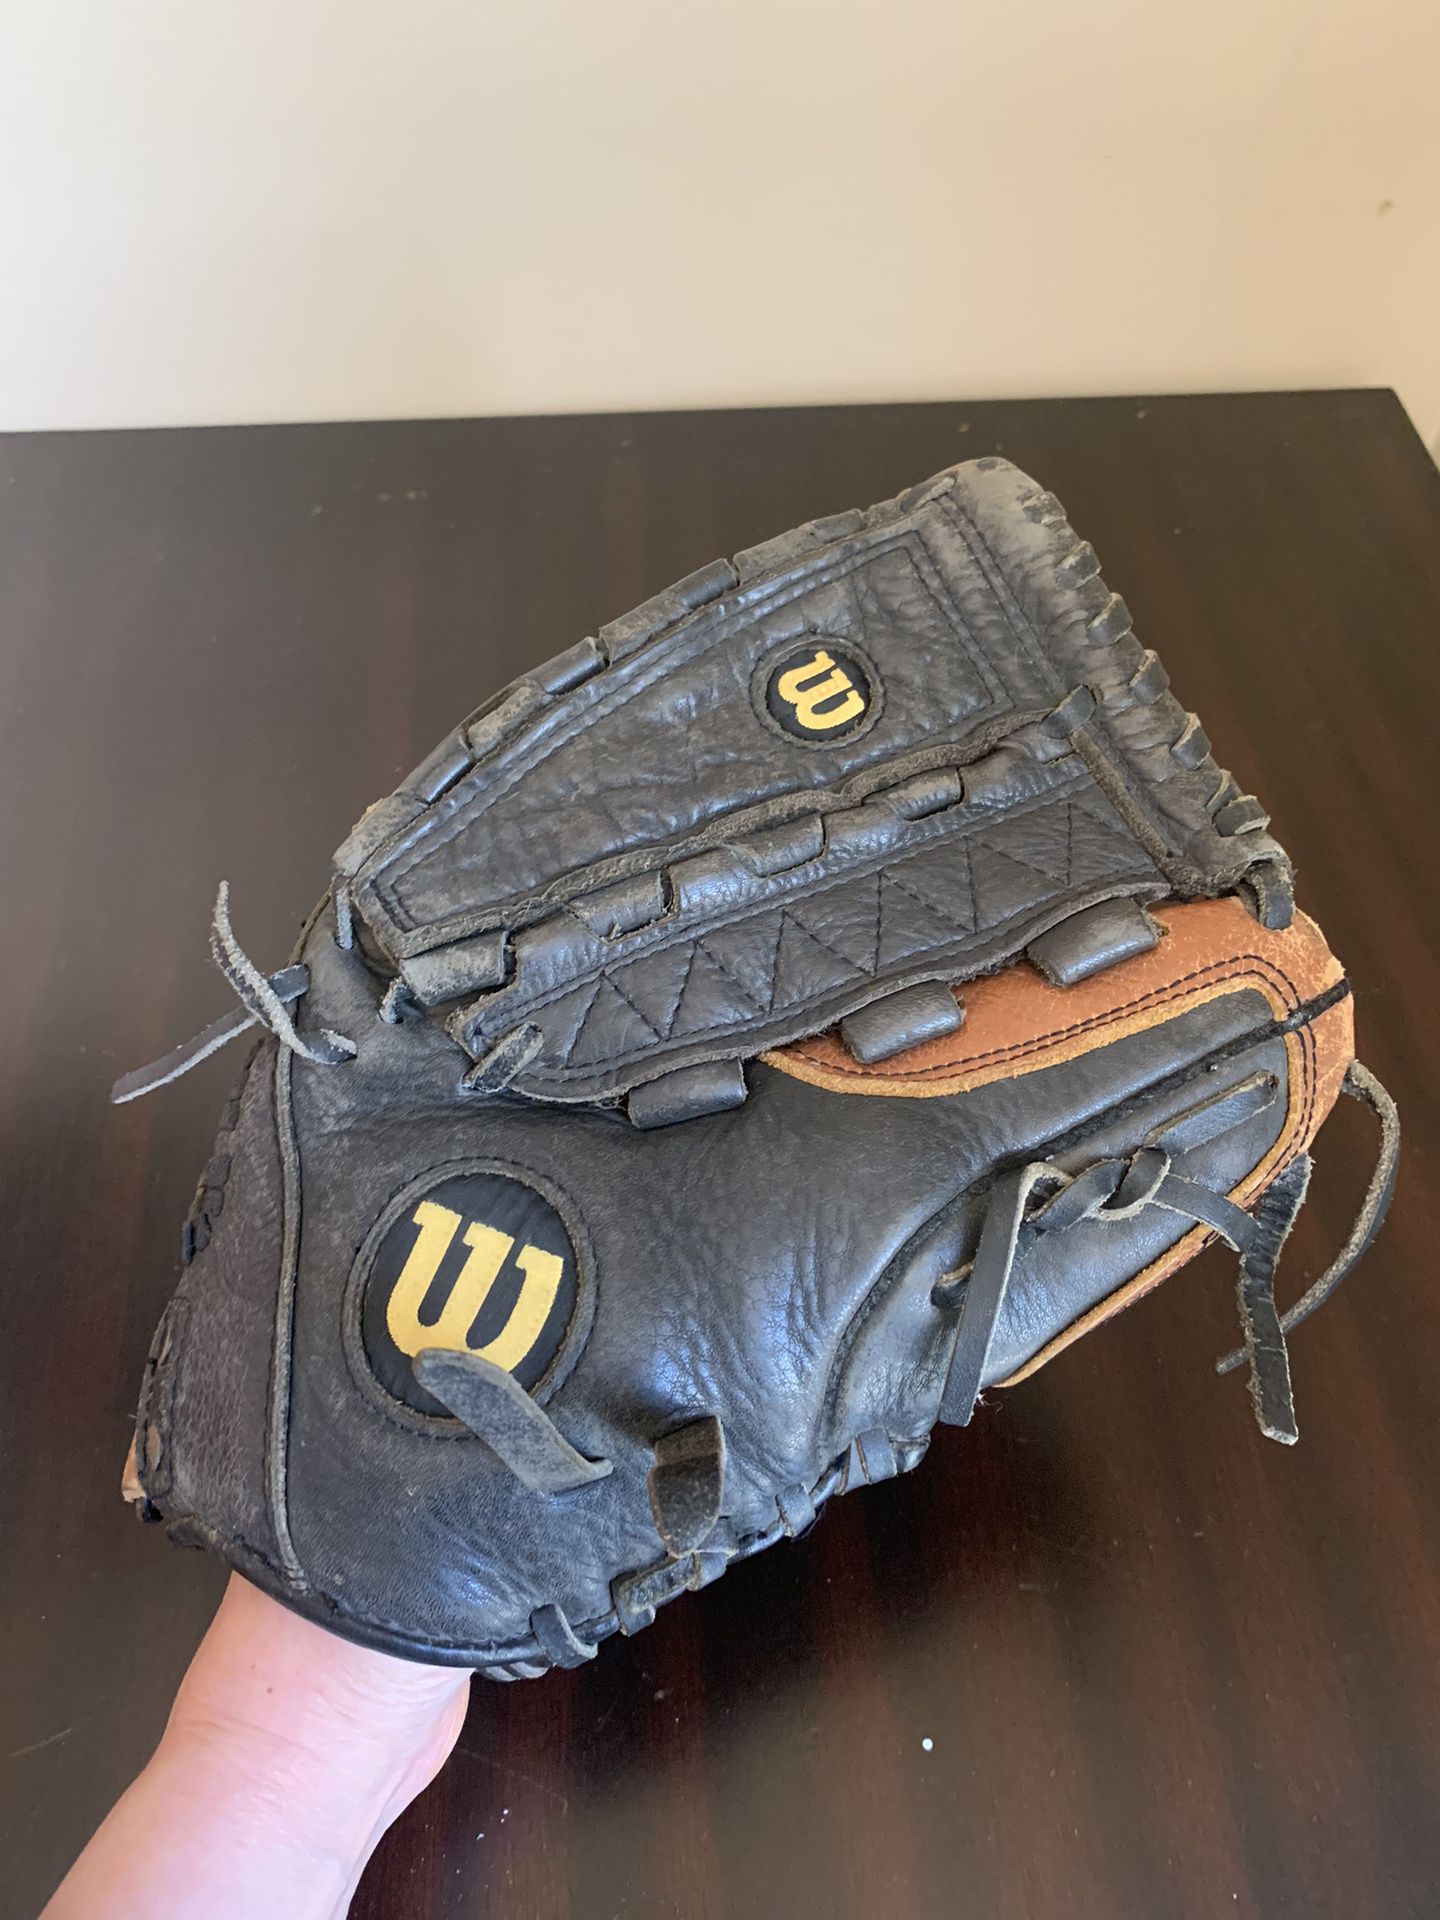 Wilson A500  12.5" baseball glove RHT